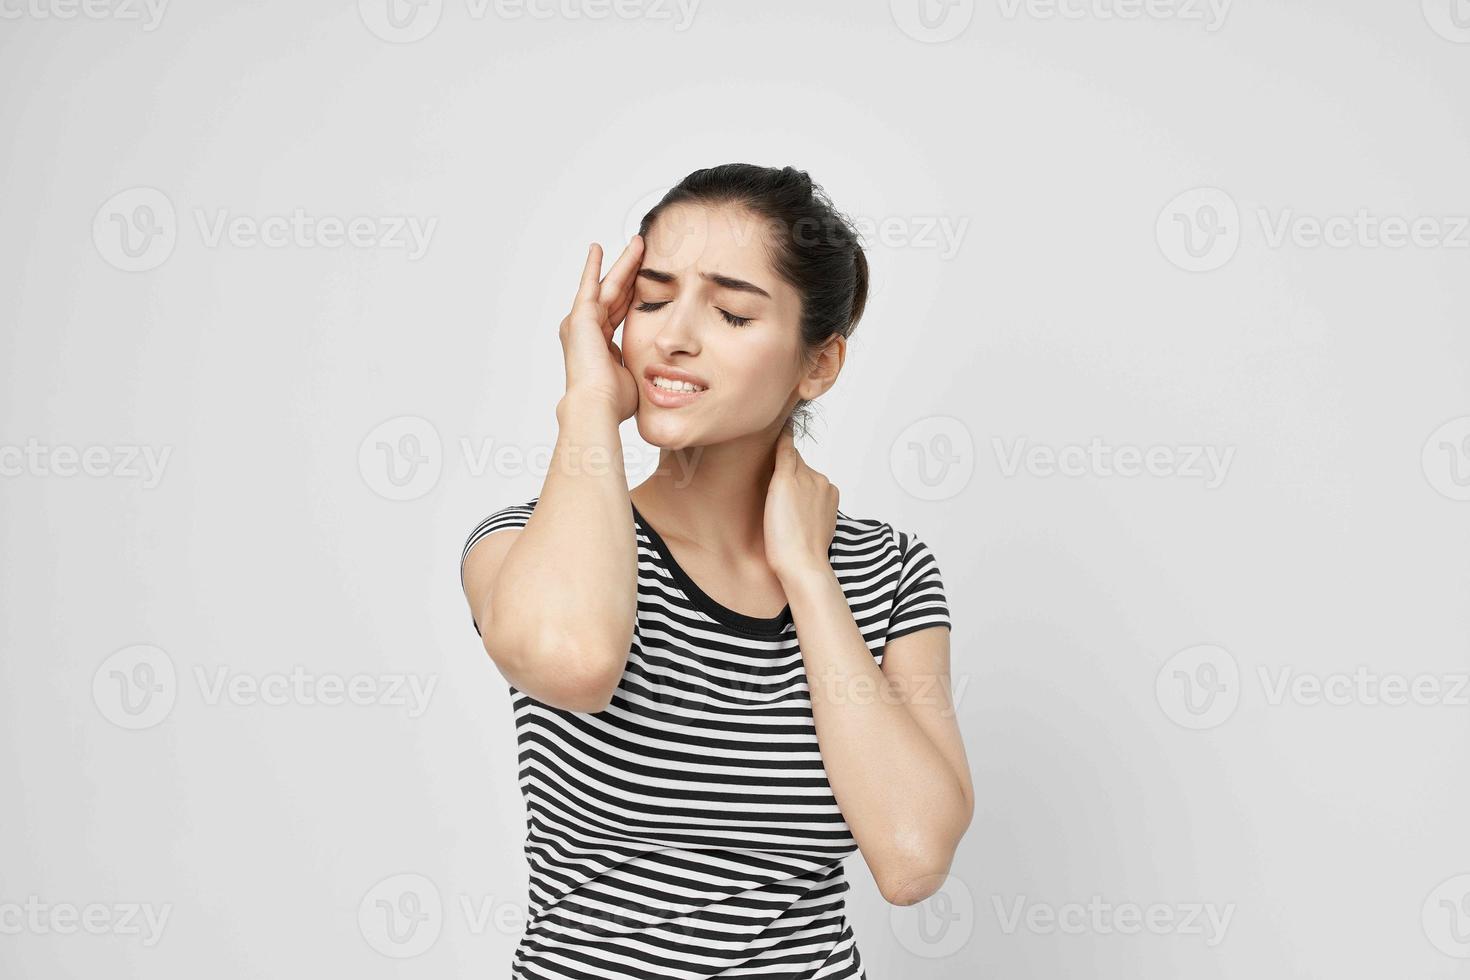 krank Frau Kopfschmerzen schmerzlich Syndrom Beschwerden Licht Hintergrund foto